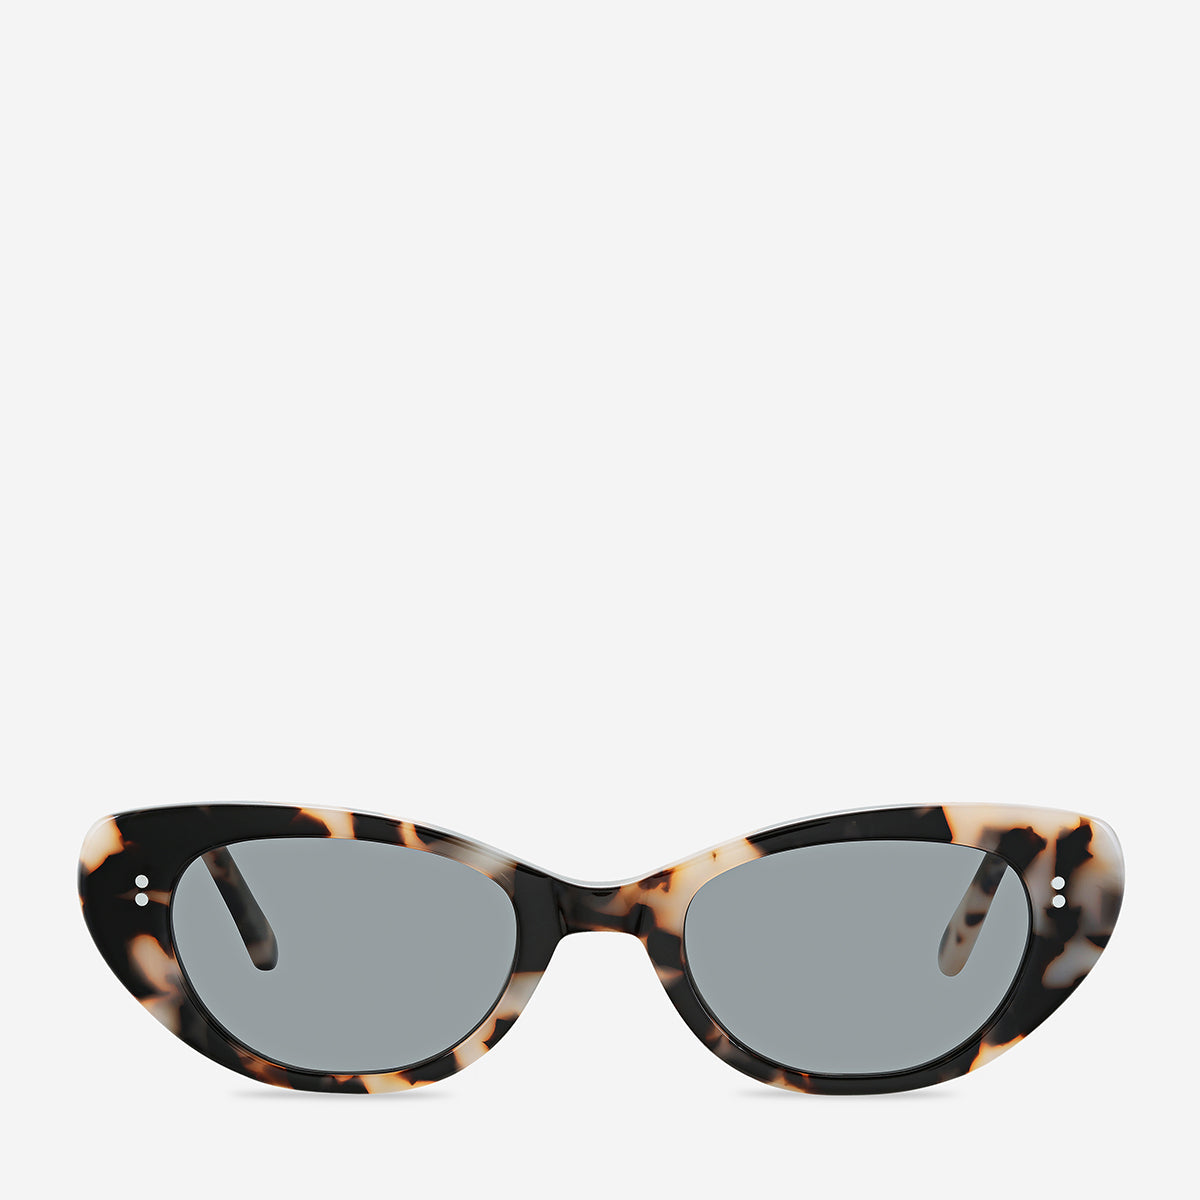 Wonderment - Unisex Polarised Sunglasses